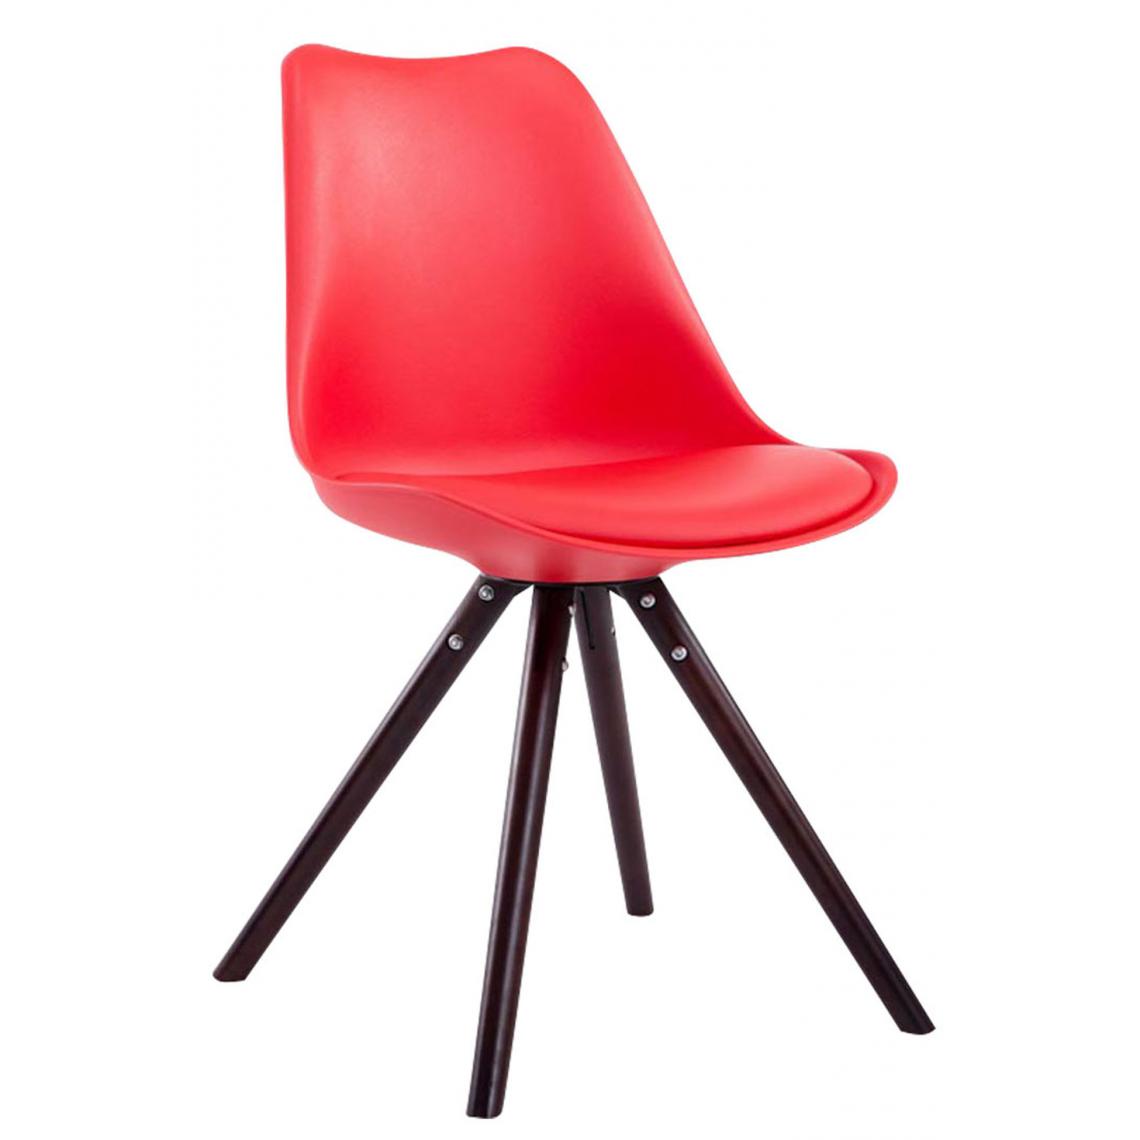 Icaverne - Magnifique Chaise visiteur reference Katmandou cuir synthétique rond cappuccino (chêne) couleur rouge - Chaises